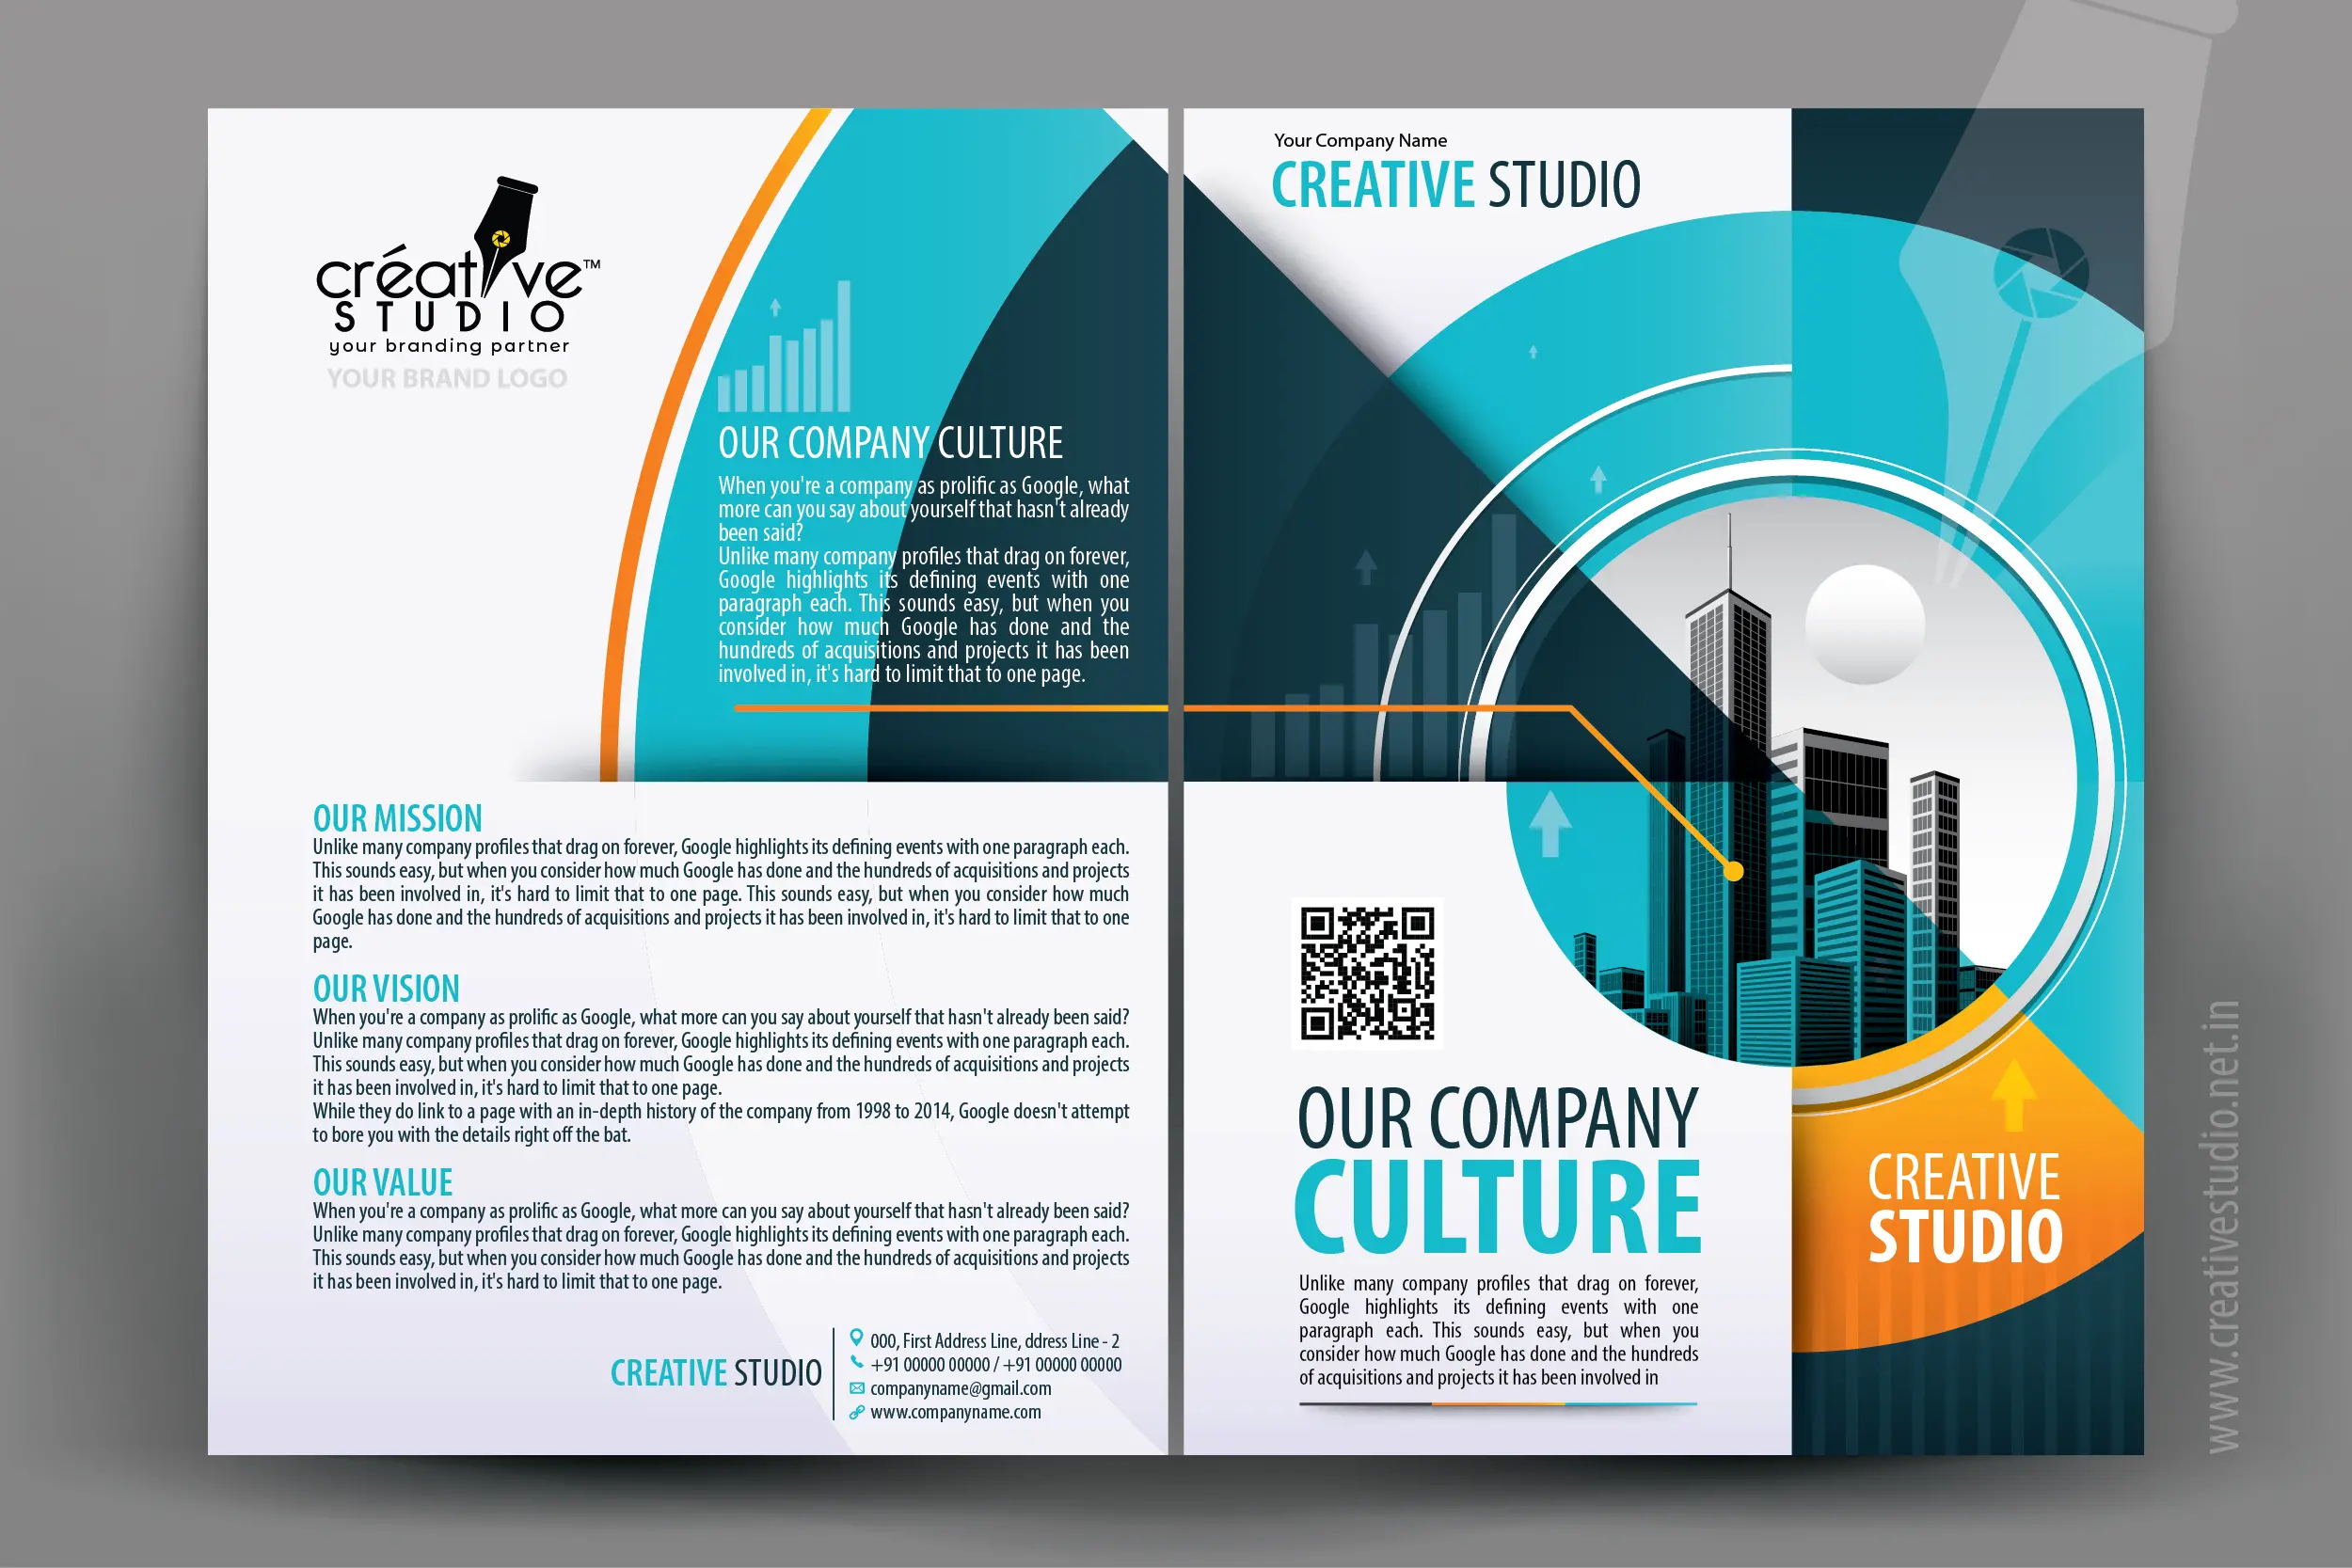 COMPANY PROFILE 02 01 - Company Profile Design Service by Creative Studio